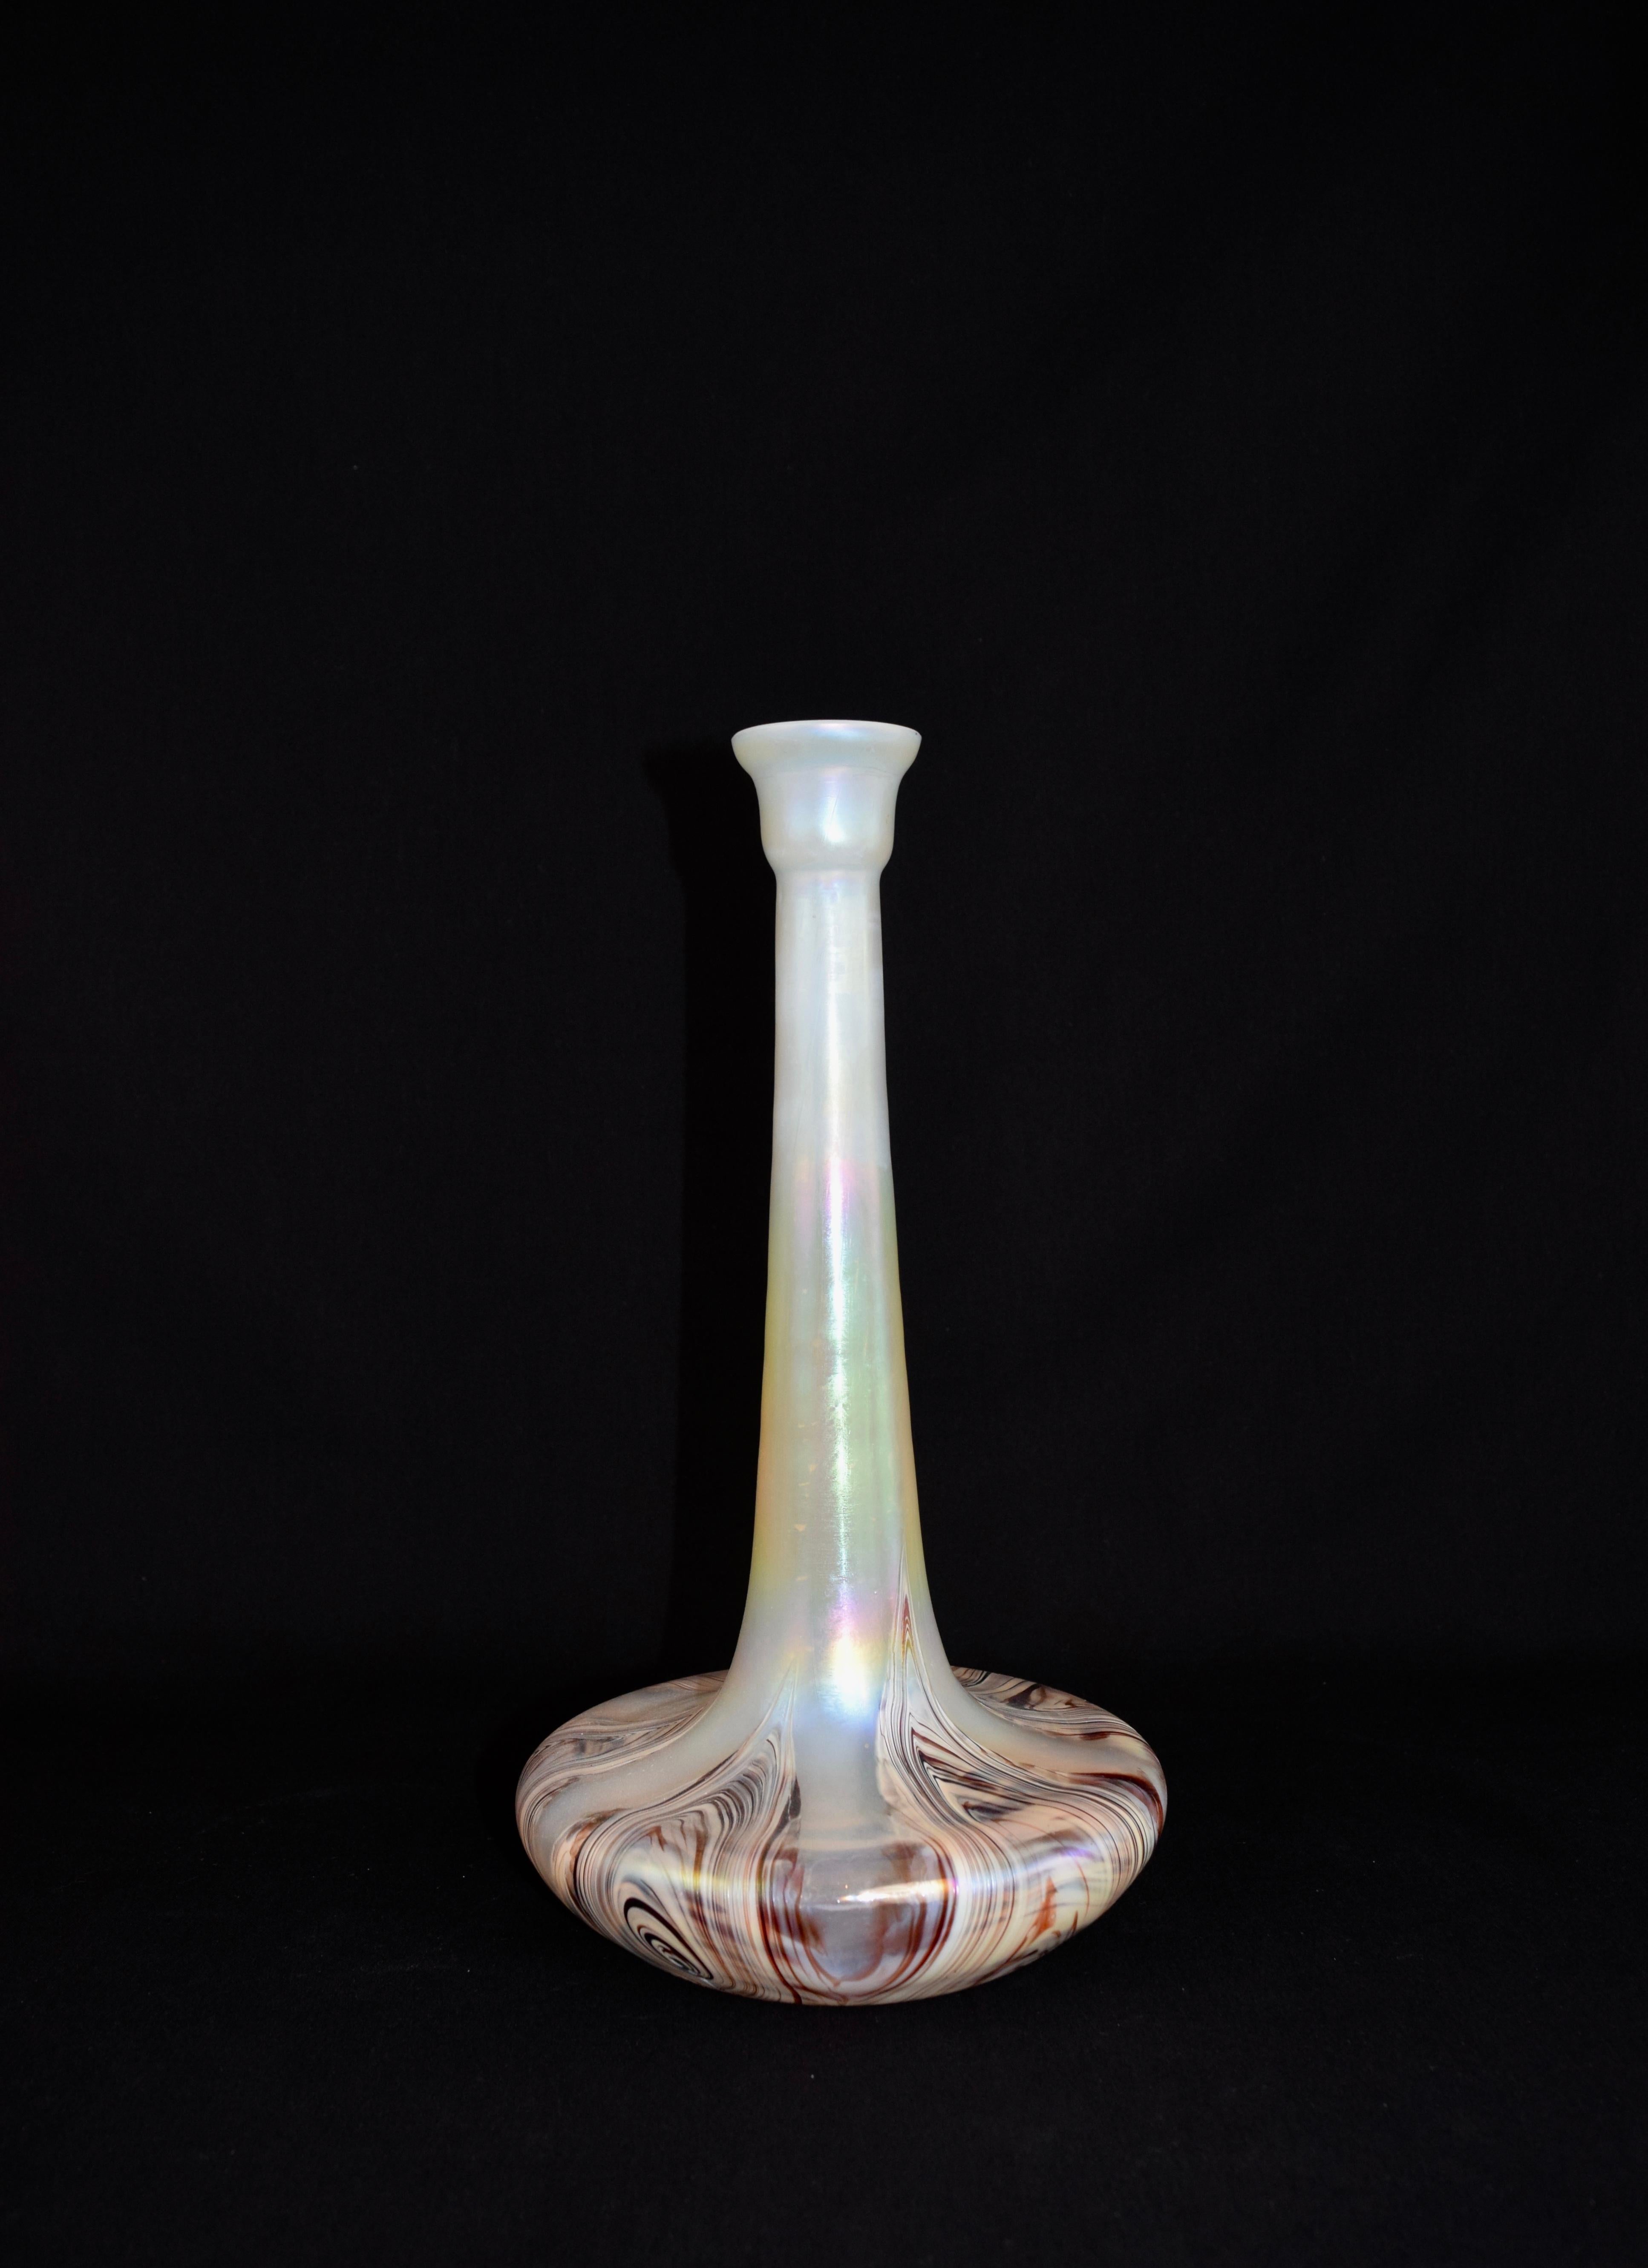 Un ensemble impressionnant de vases Kralik avec une forme de bouteille et des motifs marbrés avec des couleurs opalescentes, une base arrondie, un haut col élancé avec un sommet en forme de tasse. Les vases en verre irisé sont décorés de motifs